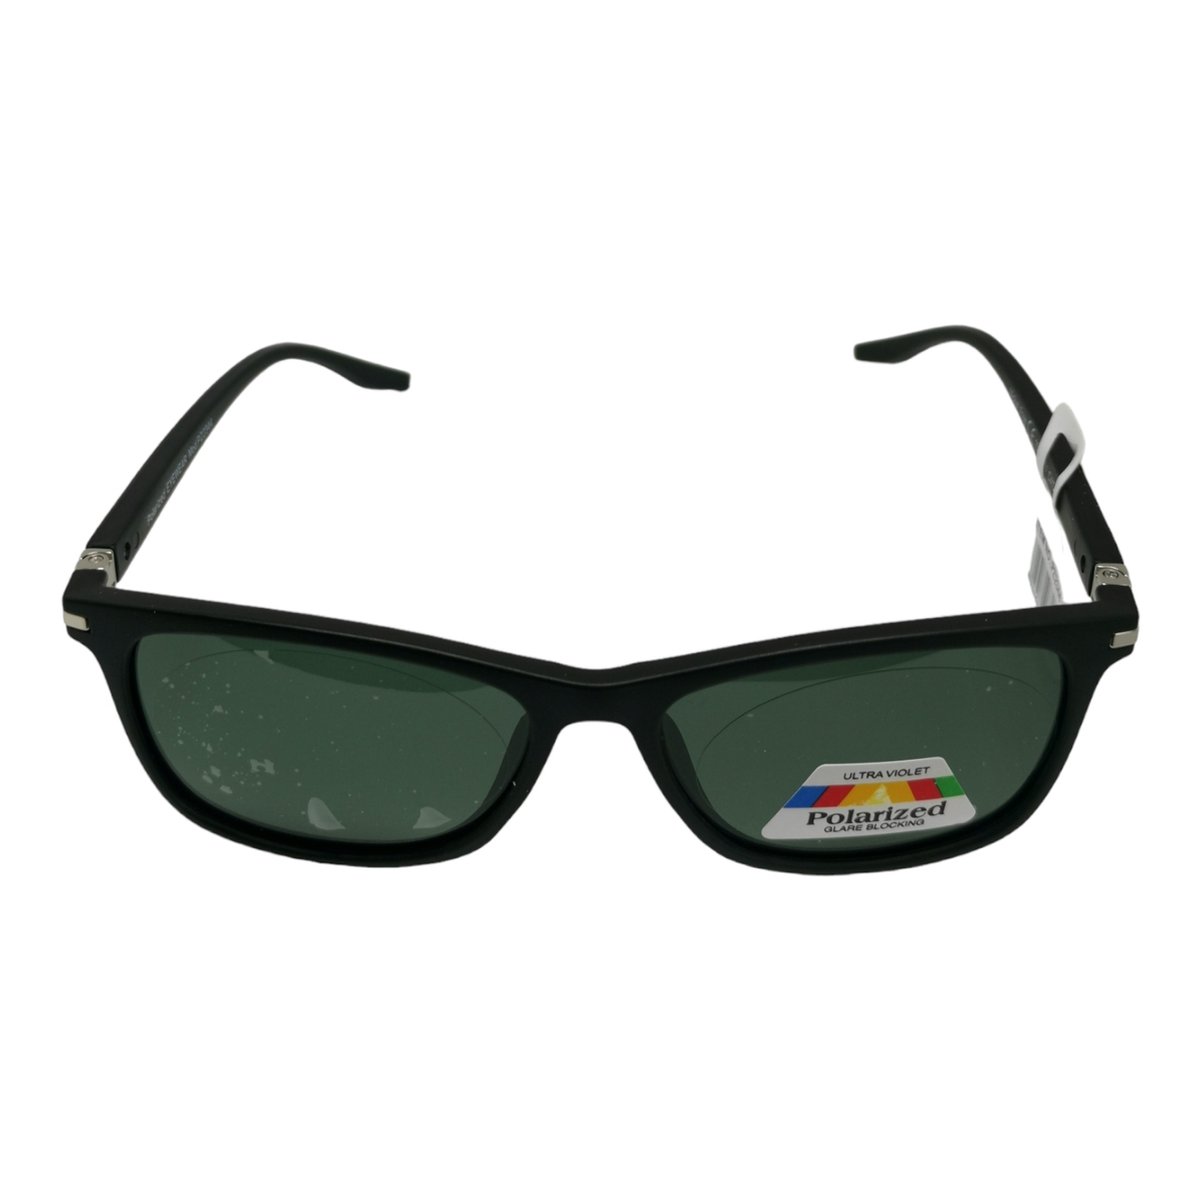 Gepolariseerde Zonnebril - Groen - Unisex - Sunglasses - Randloos - Ovaal zonnebril stijl - Kost